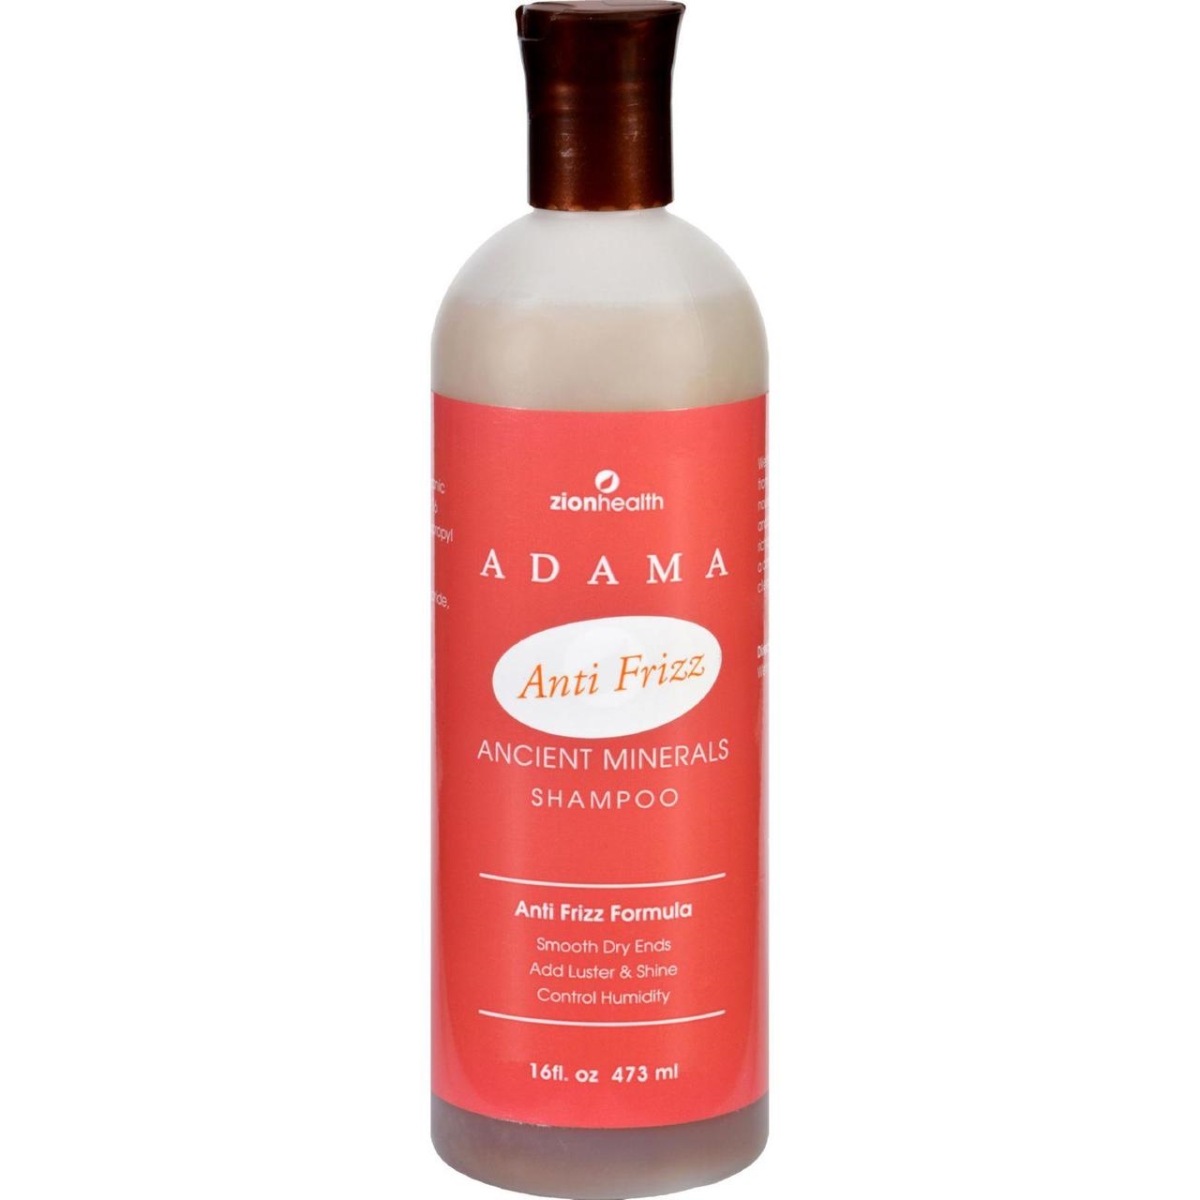 Hg1228121 16 Fl Oz Adama Minerals Anti Frizz Shampoo